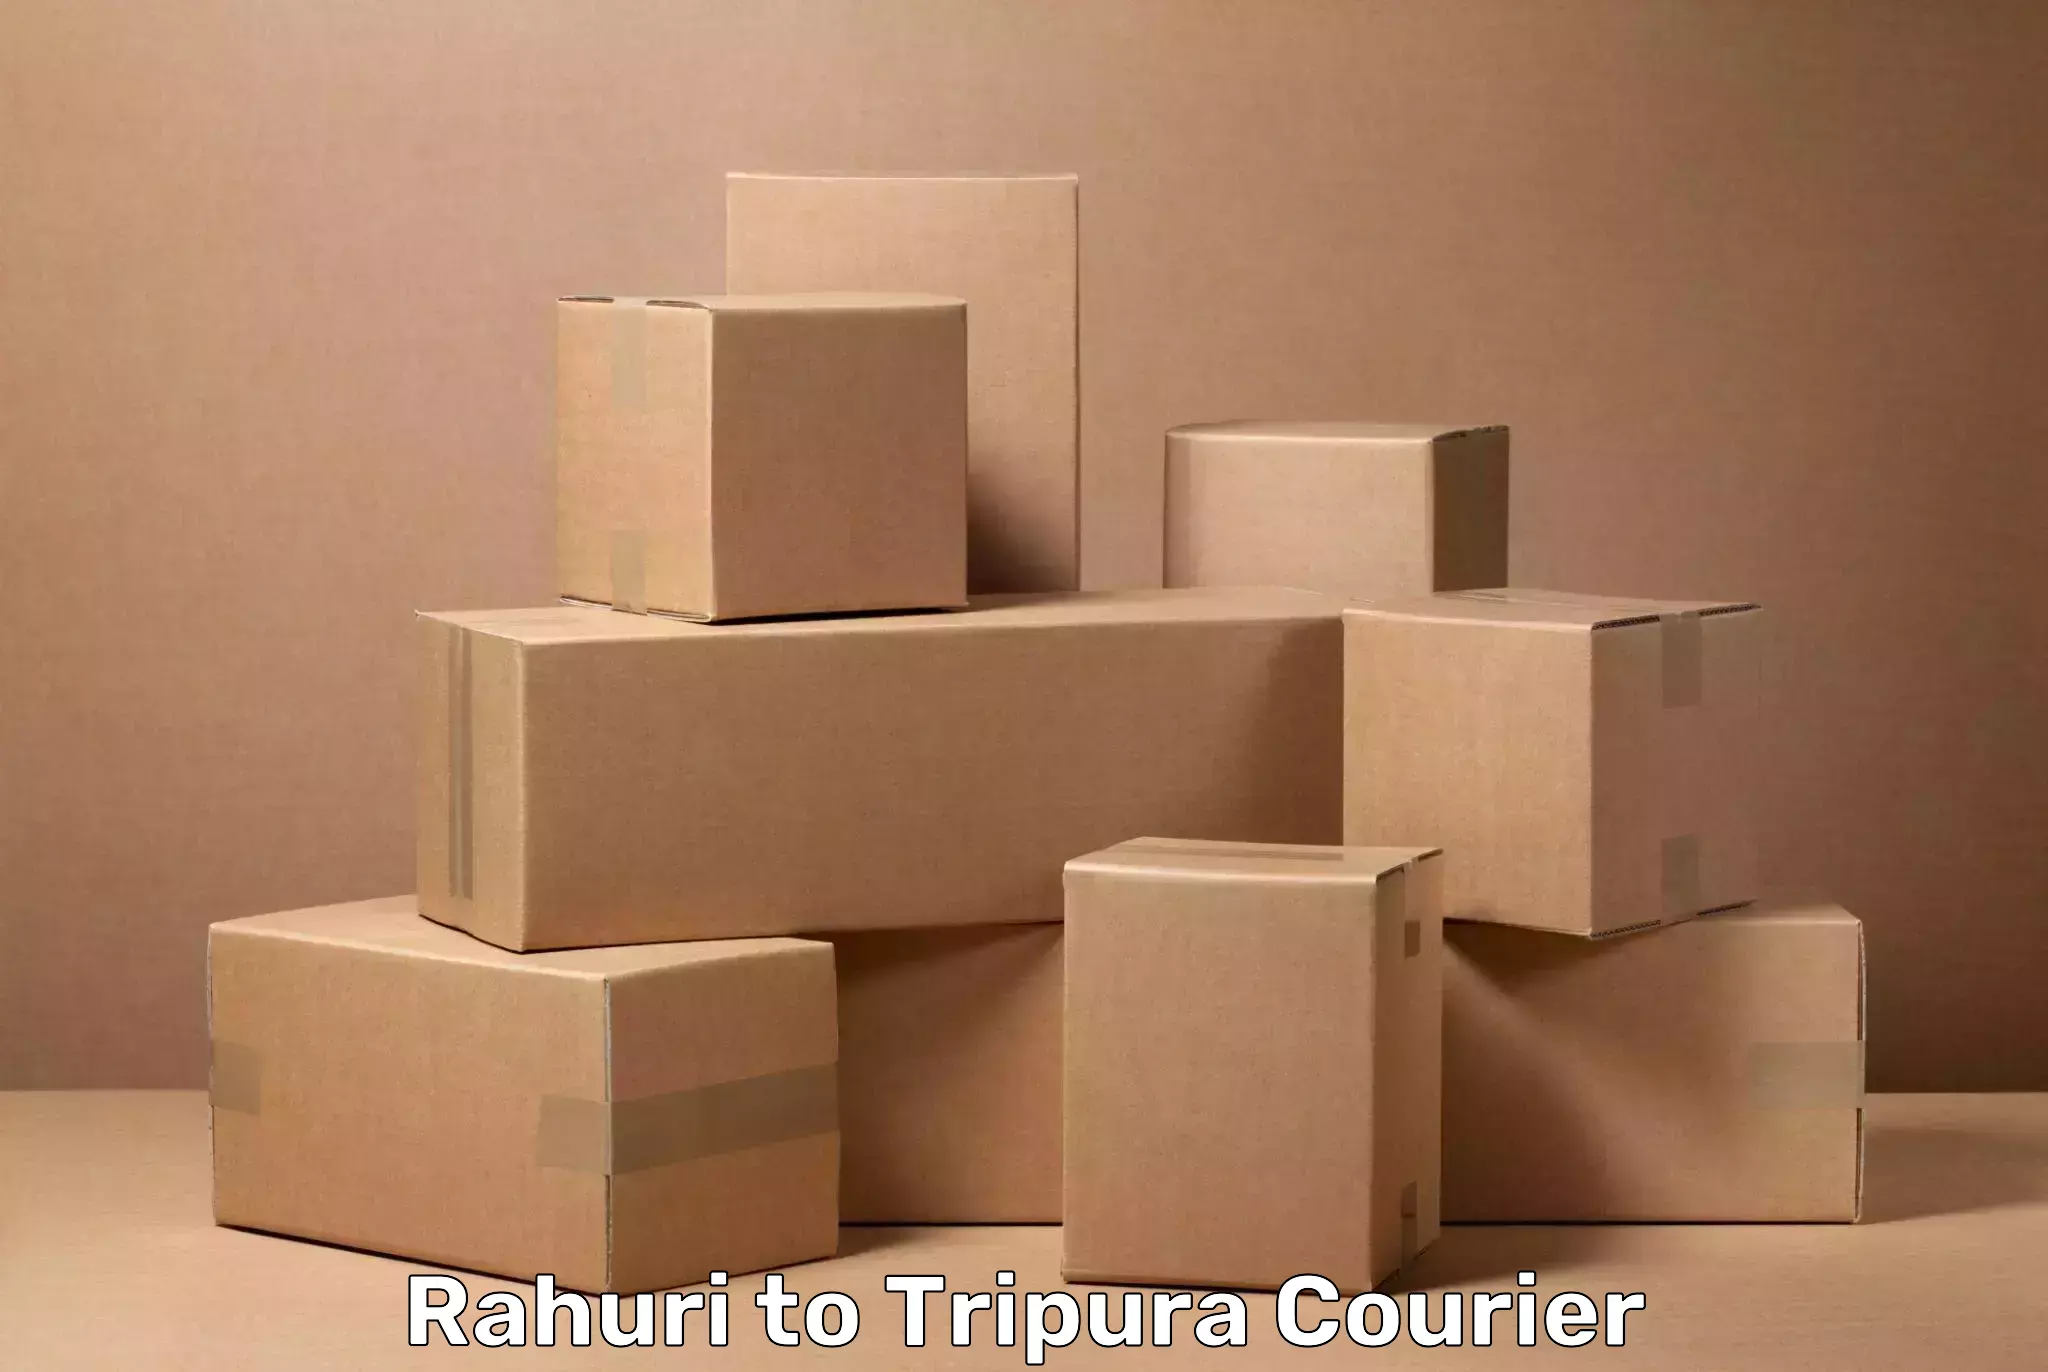 Baggage handling services Rahuri to Udaipur Tripura